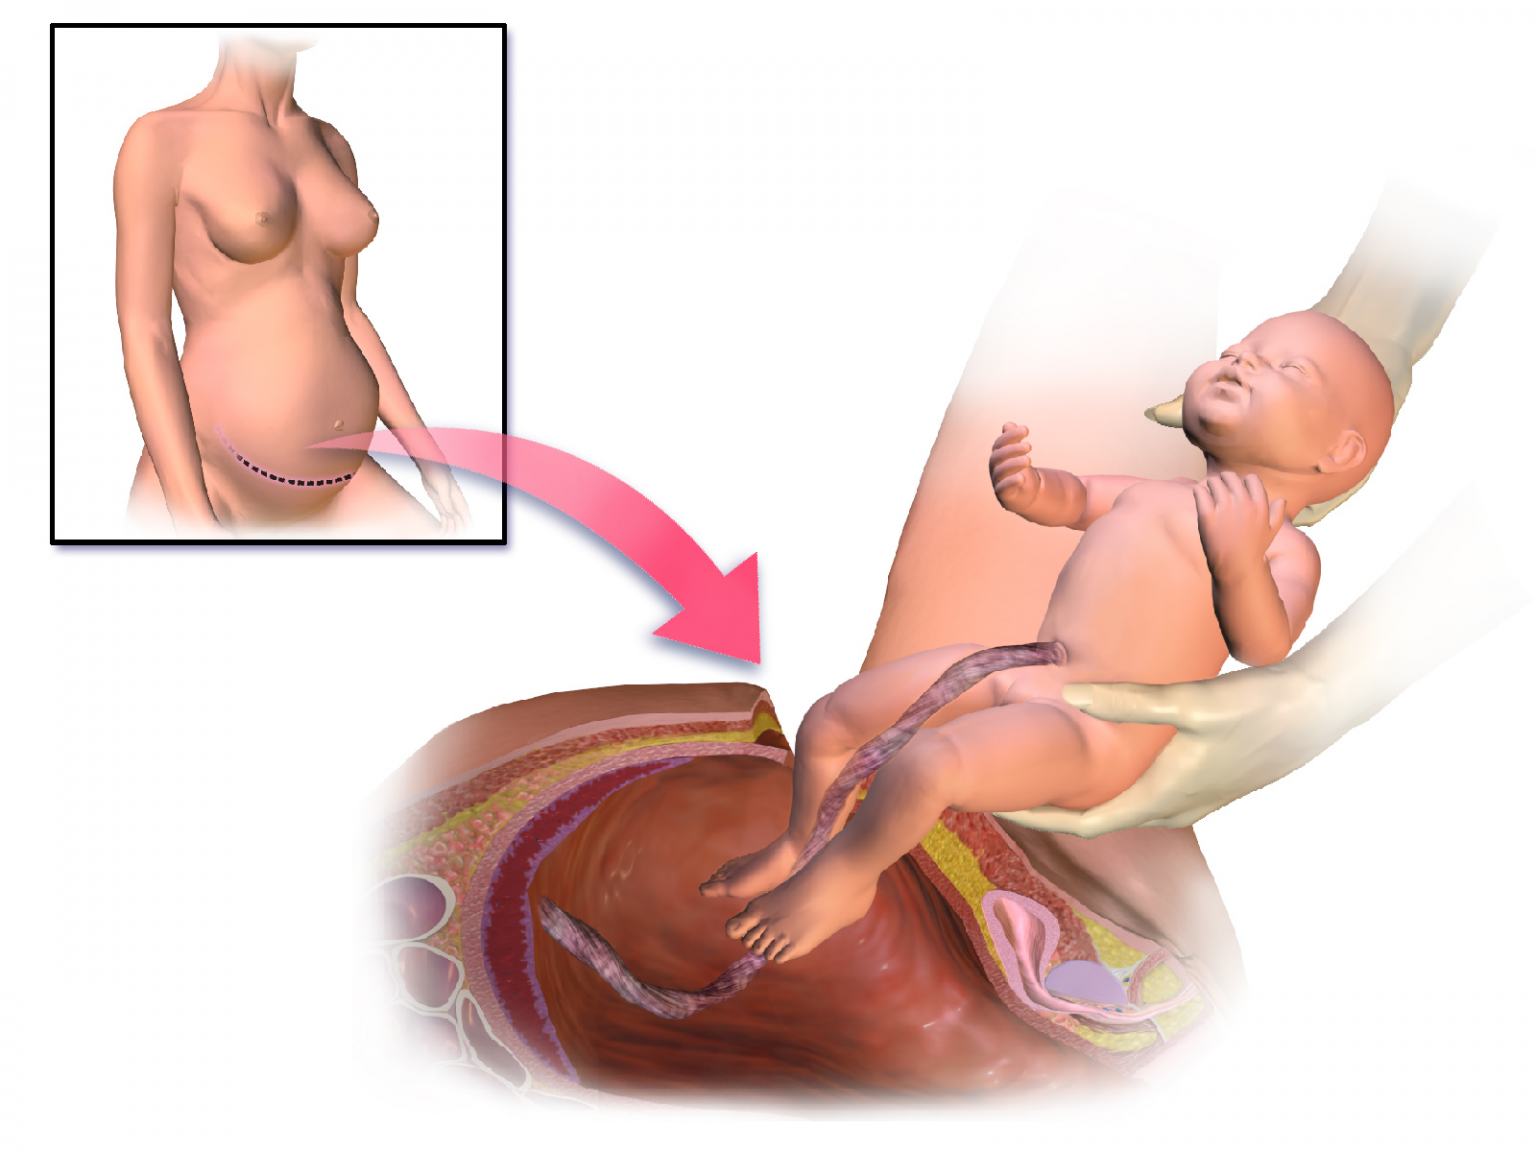 После первого рода. Рождение ребенка кесарево сечение. Родоразрешение кесарево сечение. Разрез после кесарева сечения.